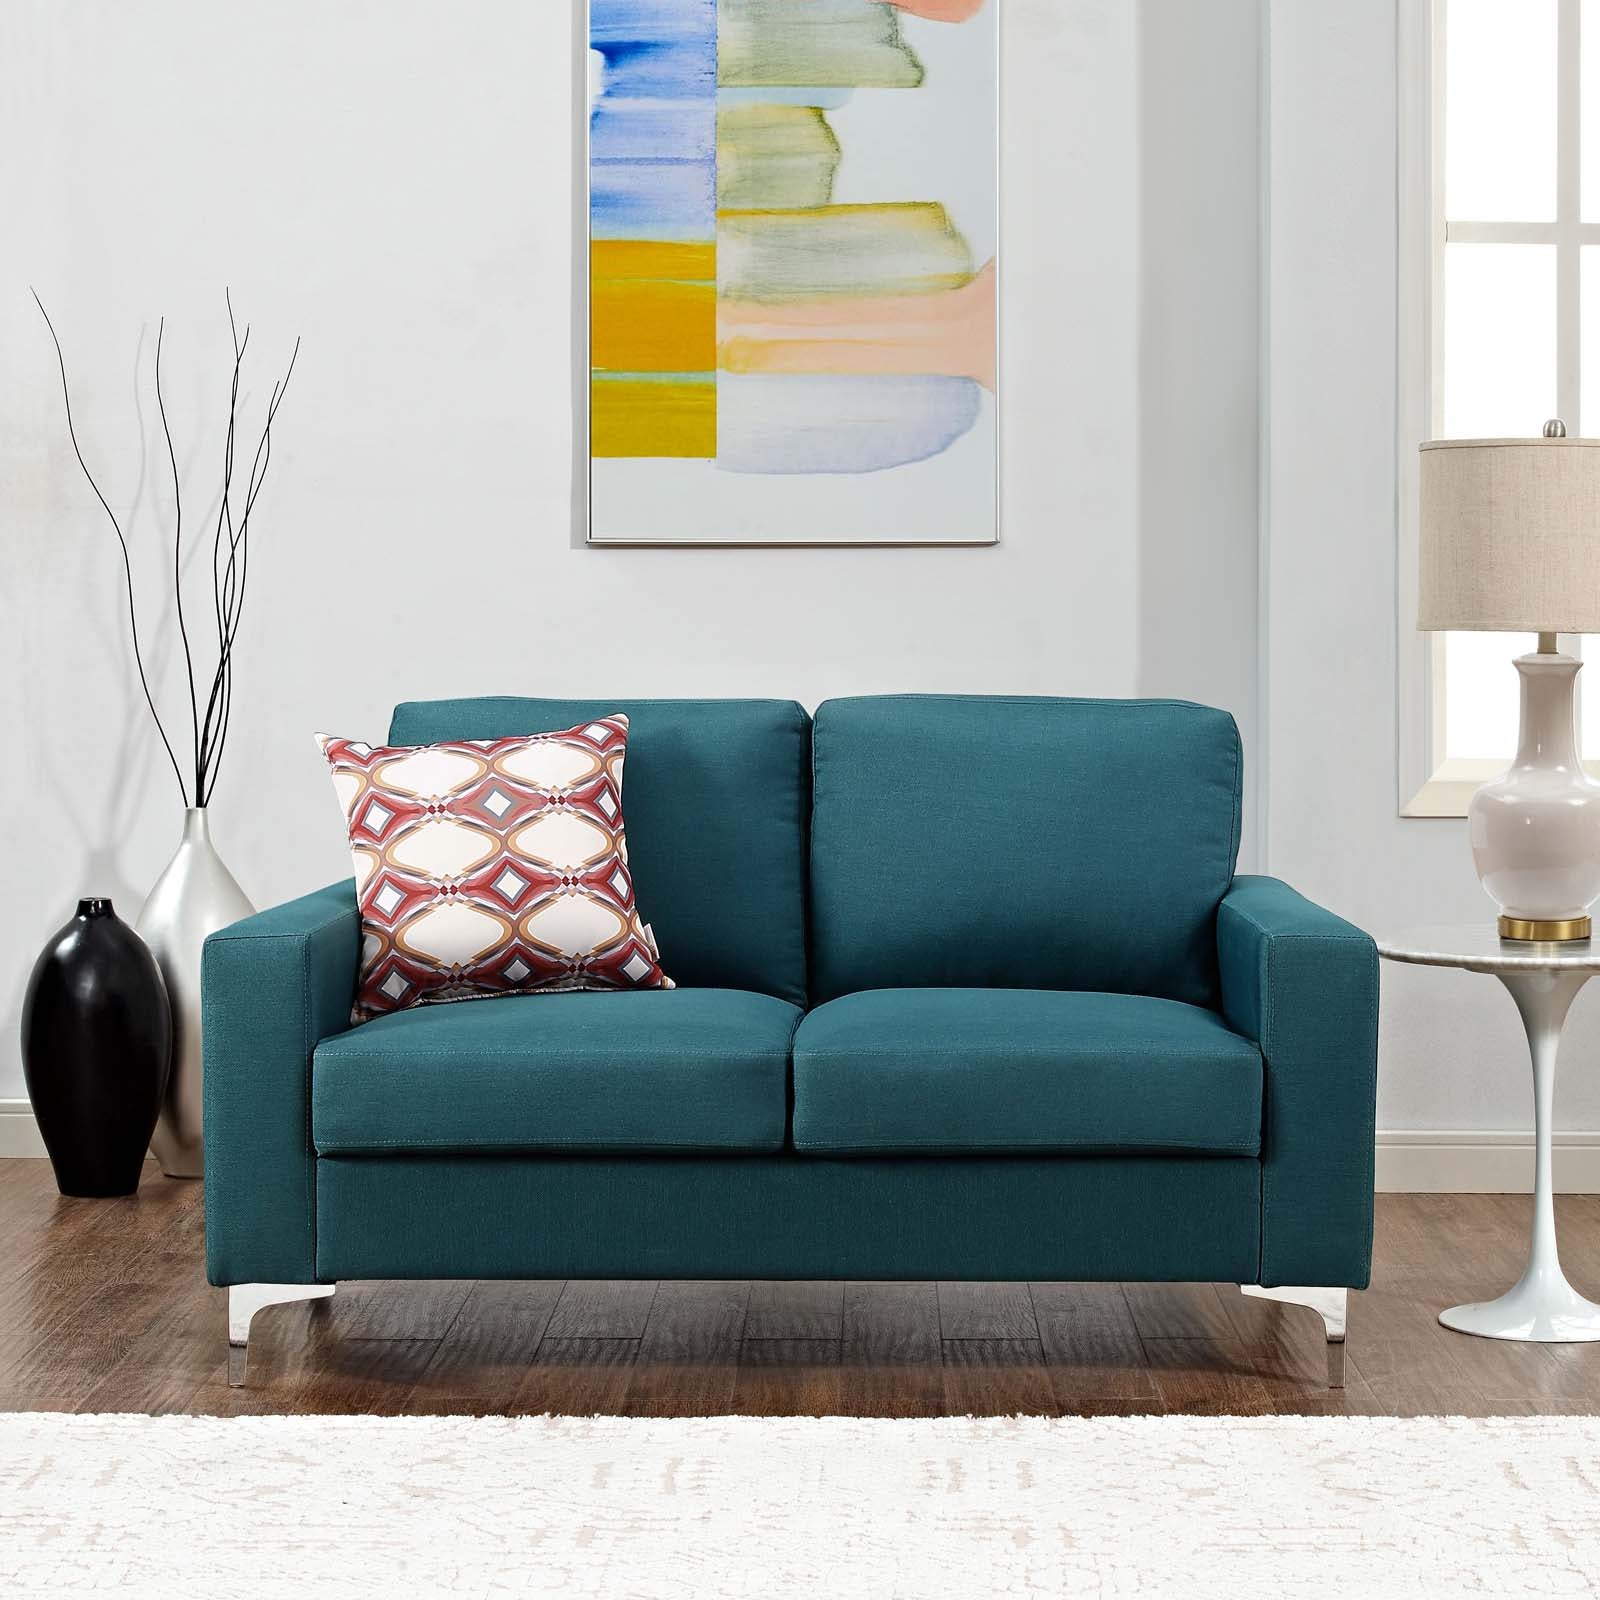 Allure Upholstered Sofa - East Shore Modern Home Furnishings